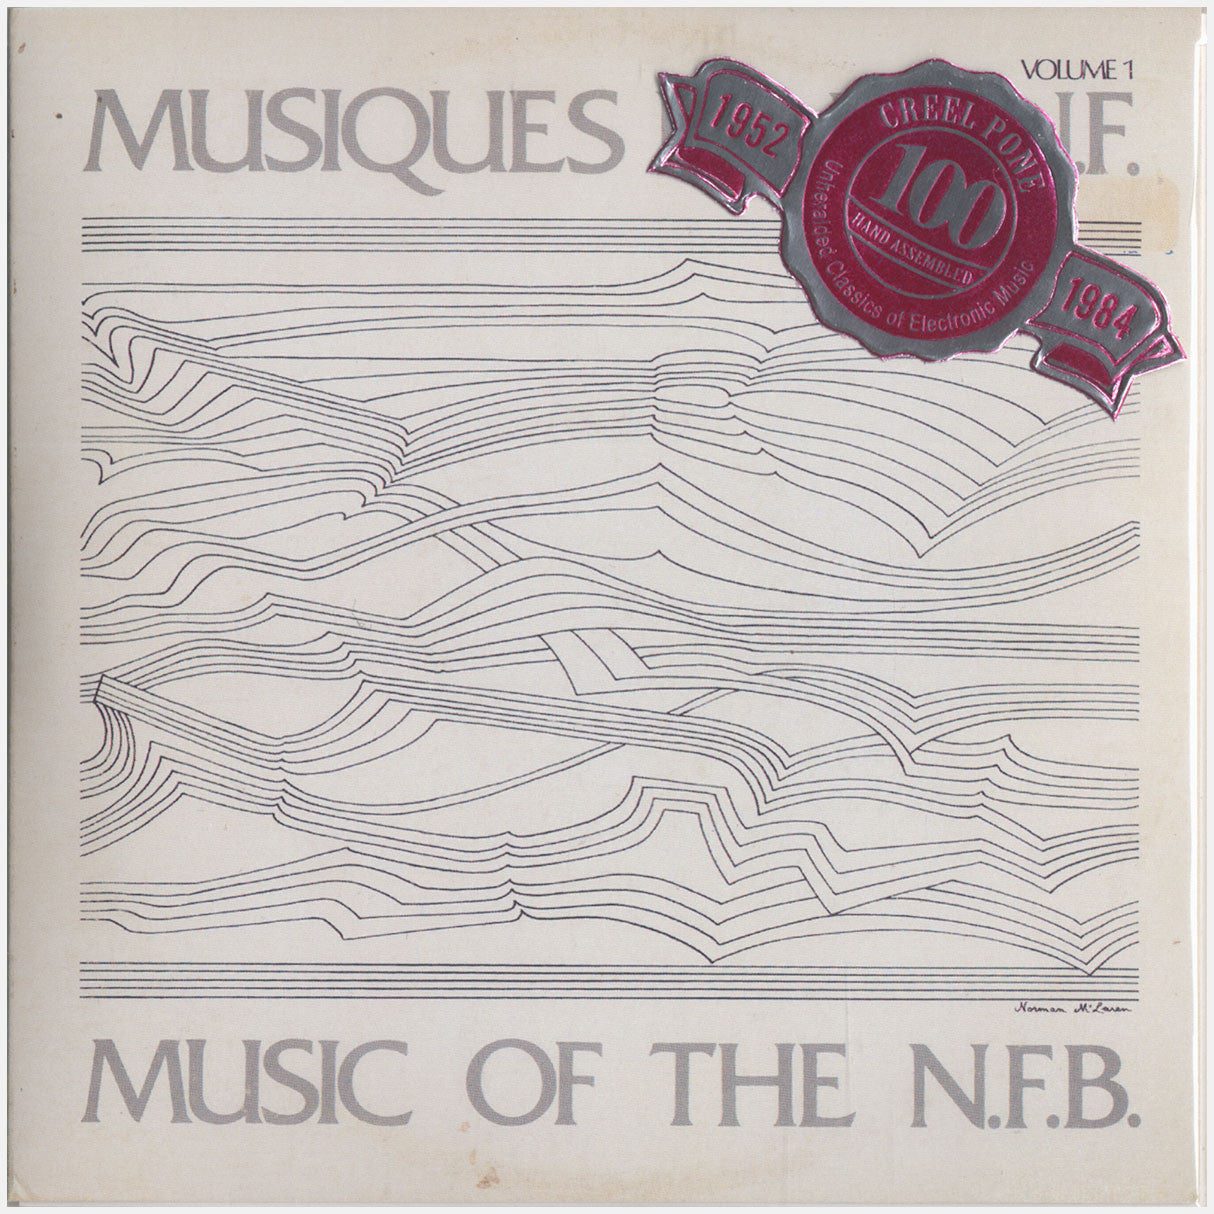 [CP 060-061 CD] Musiques de l'O.N.F., Music of the N.F.B.